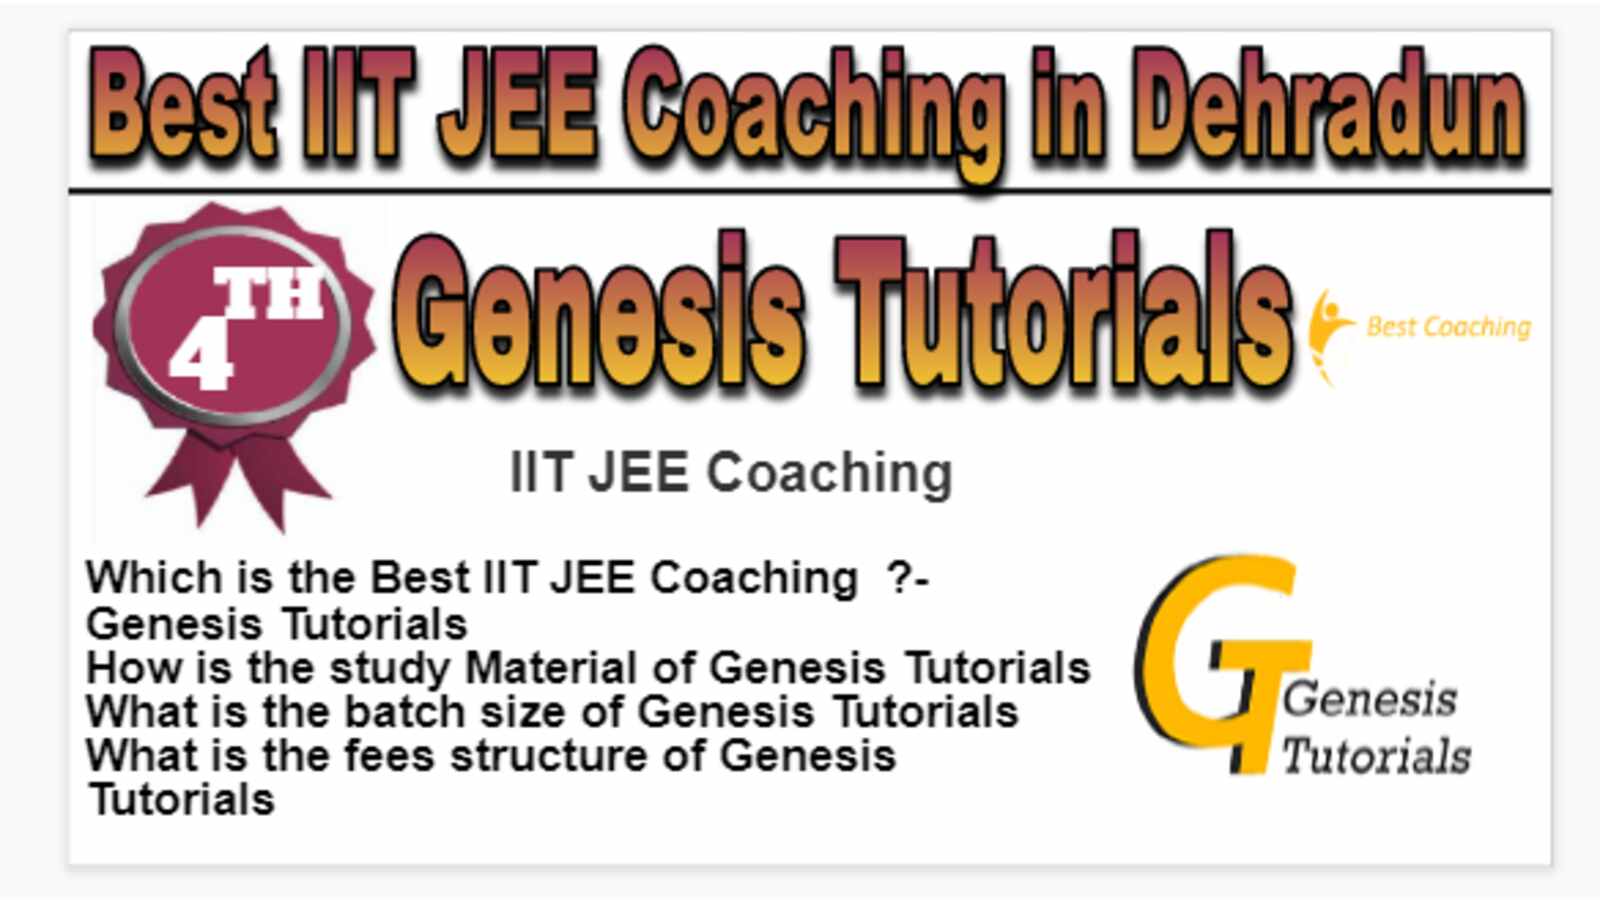 Rank 4 Best IIT JEE Coaching in Dehradun